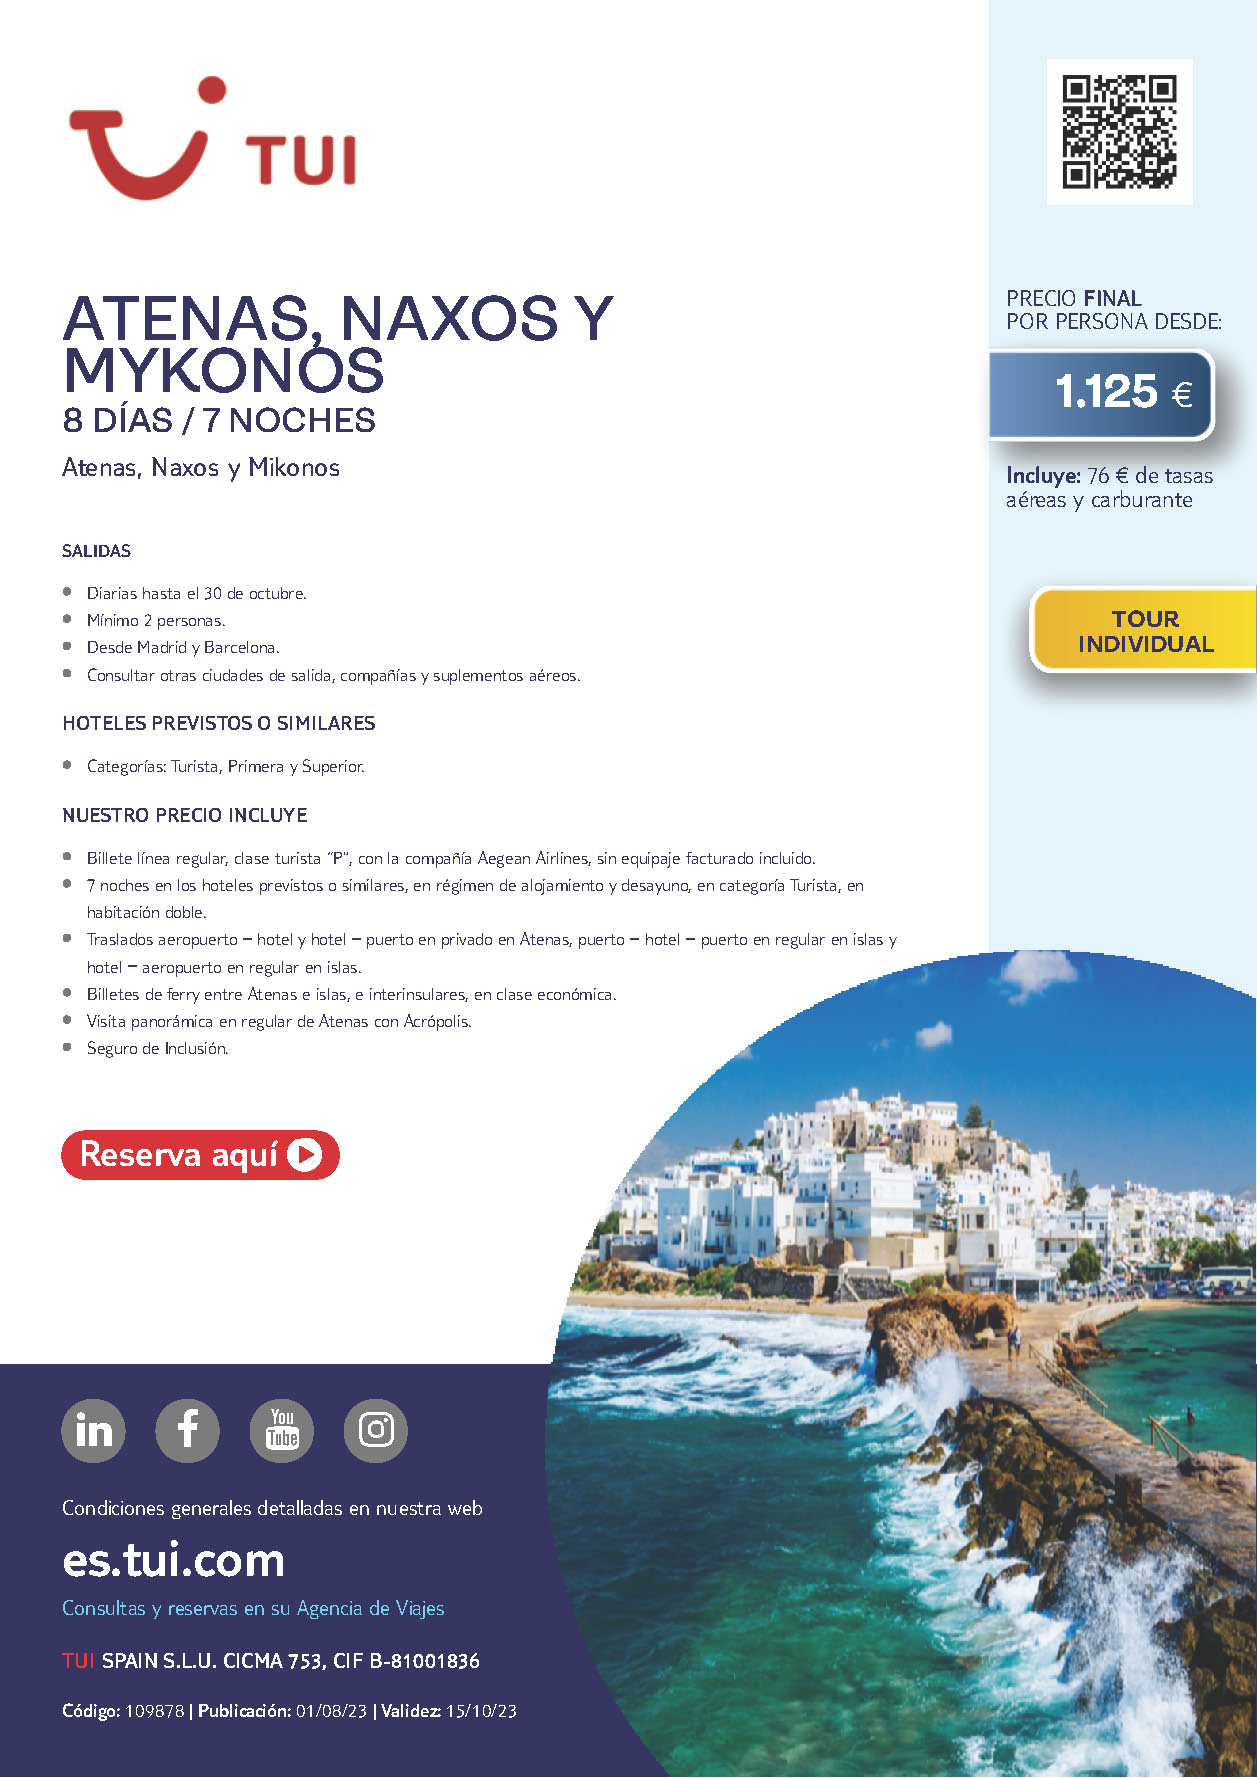 Oferta TUI circuito Grecia Atenas Naxos y Mykonos 8 dias salidas Agosto a Octubre 2023 desde Madrid y Barcelona vuelos Aegean